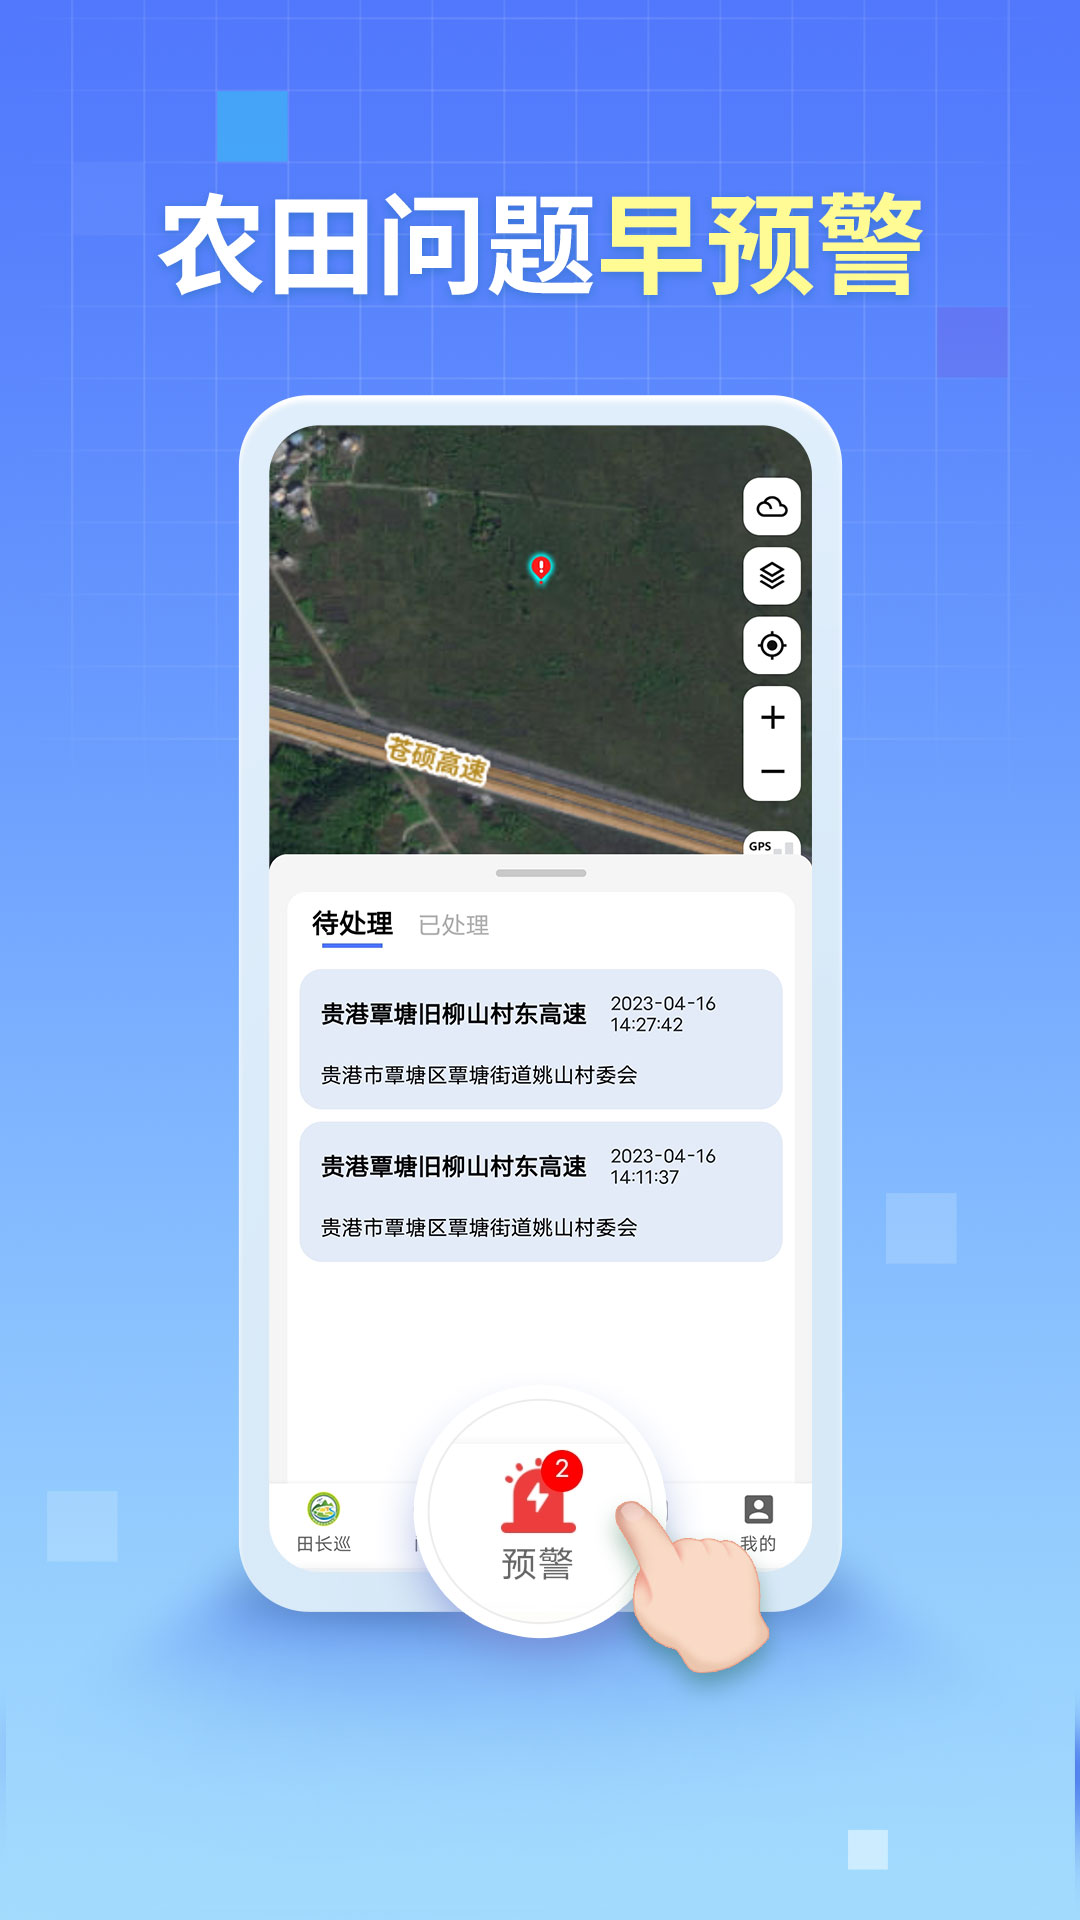 田长巡app下载安装-广西田长巡appv2.0.49 官方最新版